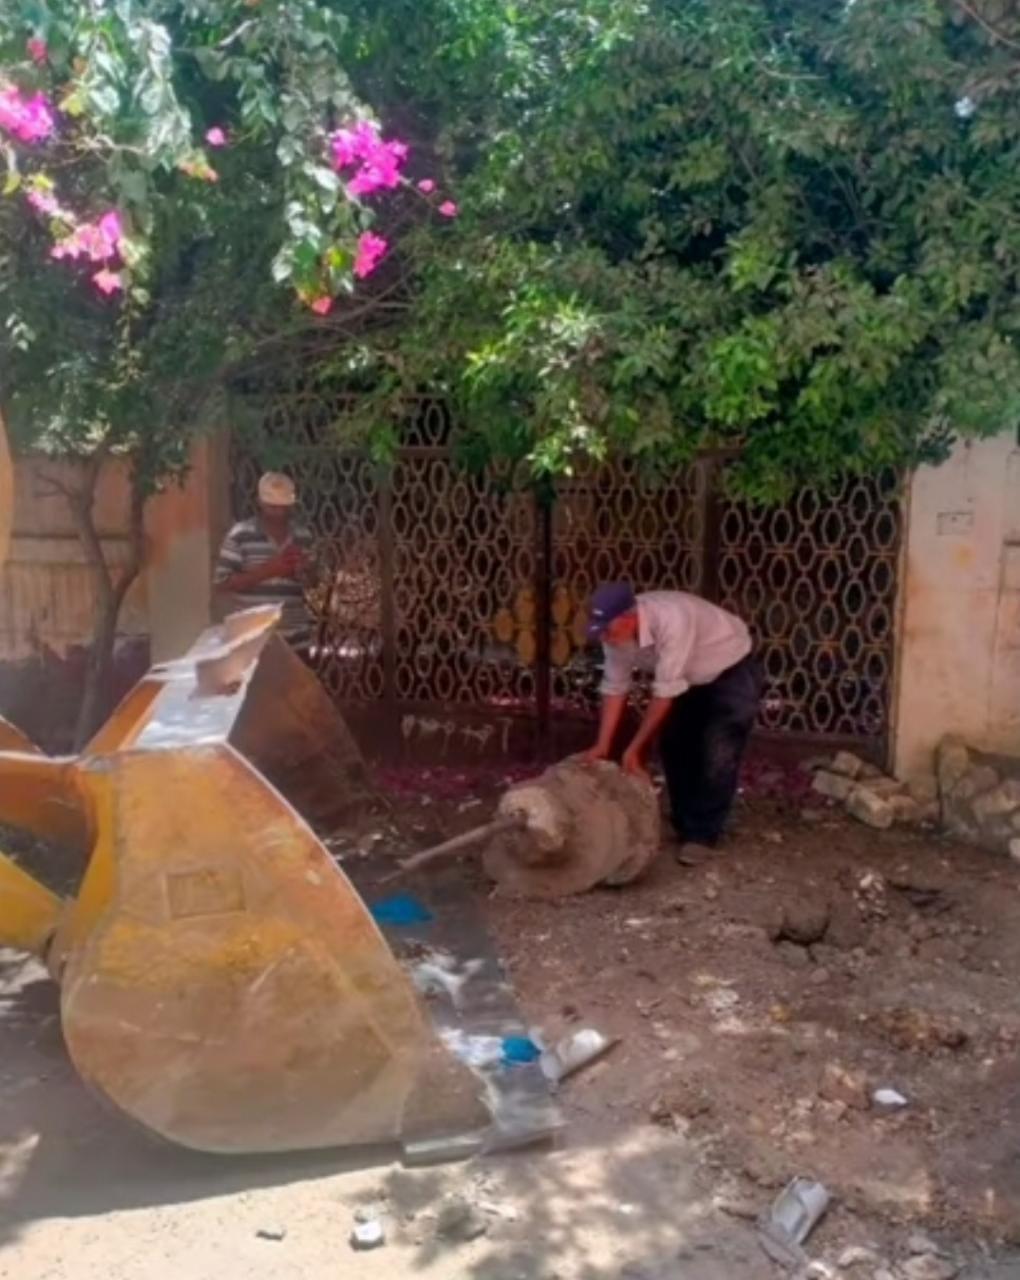 بالصور- حي العجمي يزيل تعديات لـ"حمو بيكا" أمام منزله..